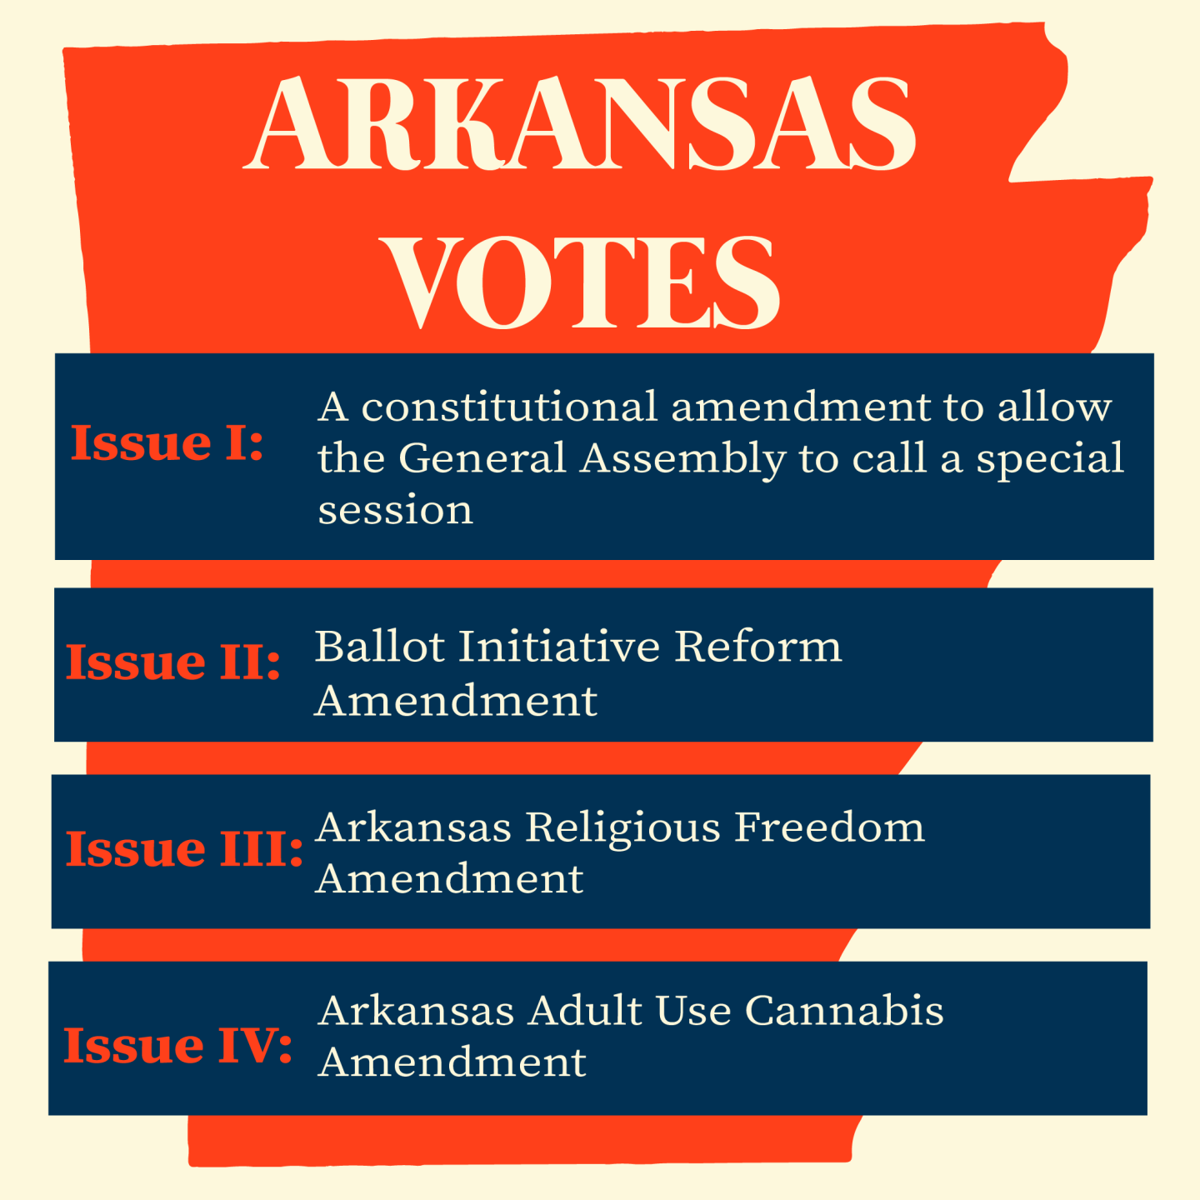 27 Amendments